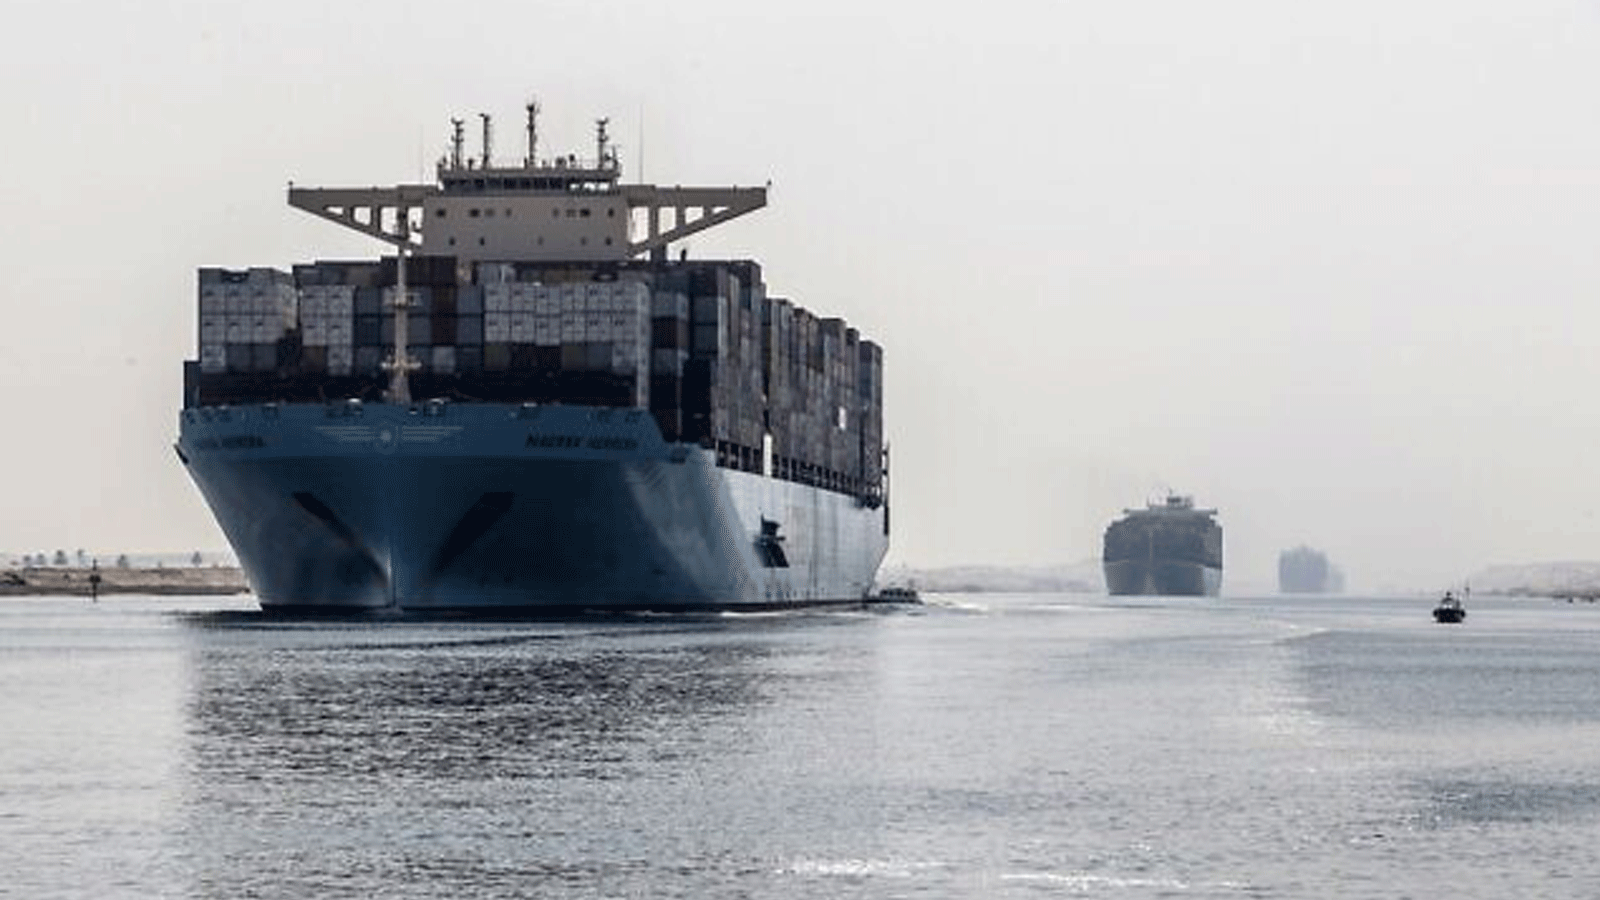 سفينة حاويات تبحر عبر القسم الجديد من قناة السويس في مدينة الإسماعيلية المصرية على بعد 135 كيلومترًا شمال شرق العاصمة القاهرة في 10 تشرين الأول/أكتوبر 2019.